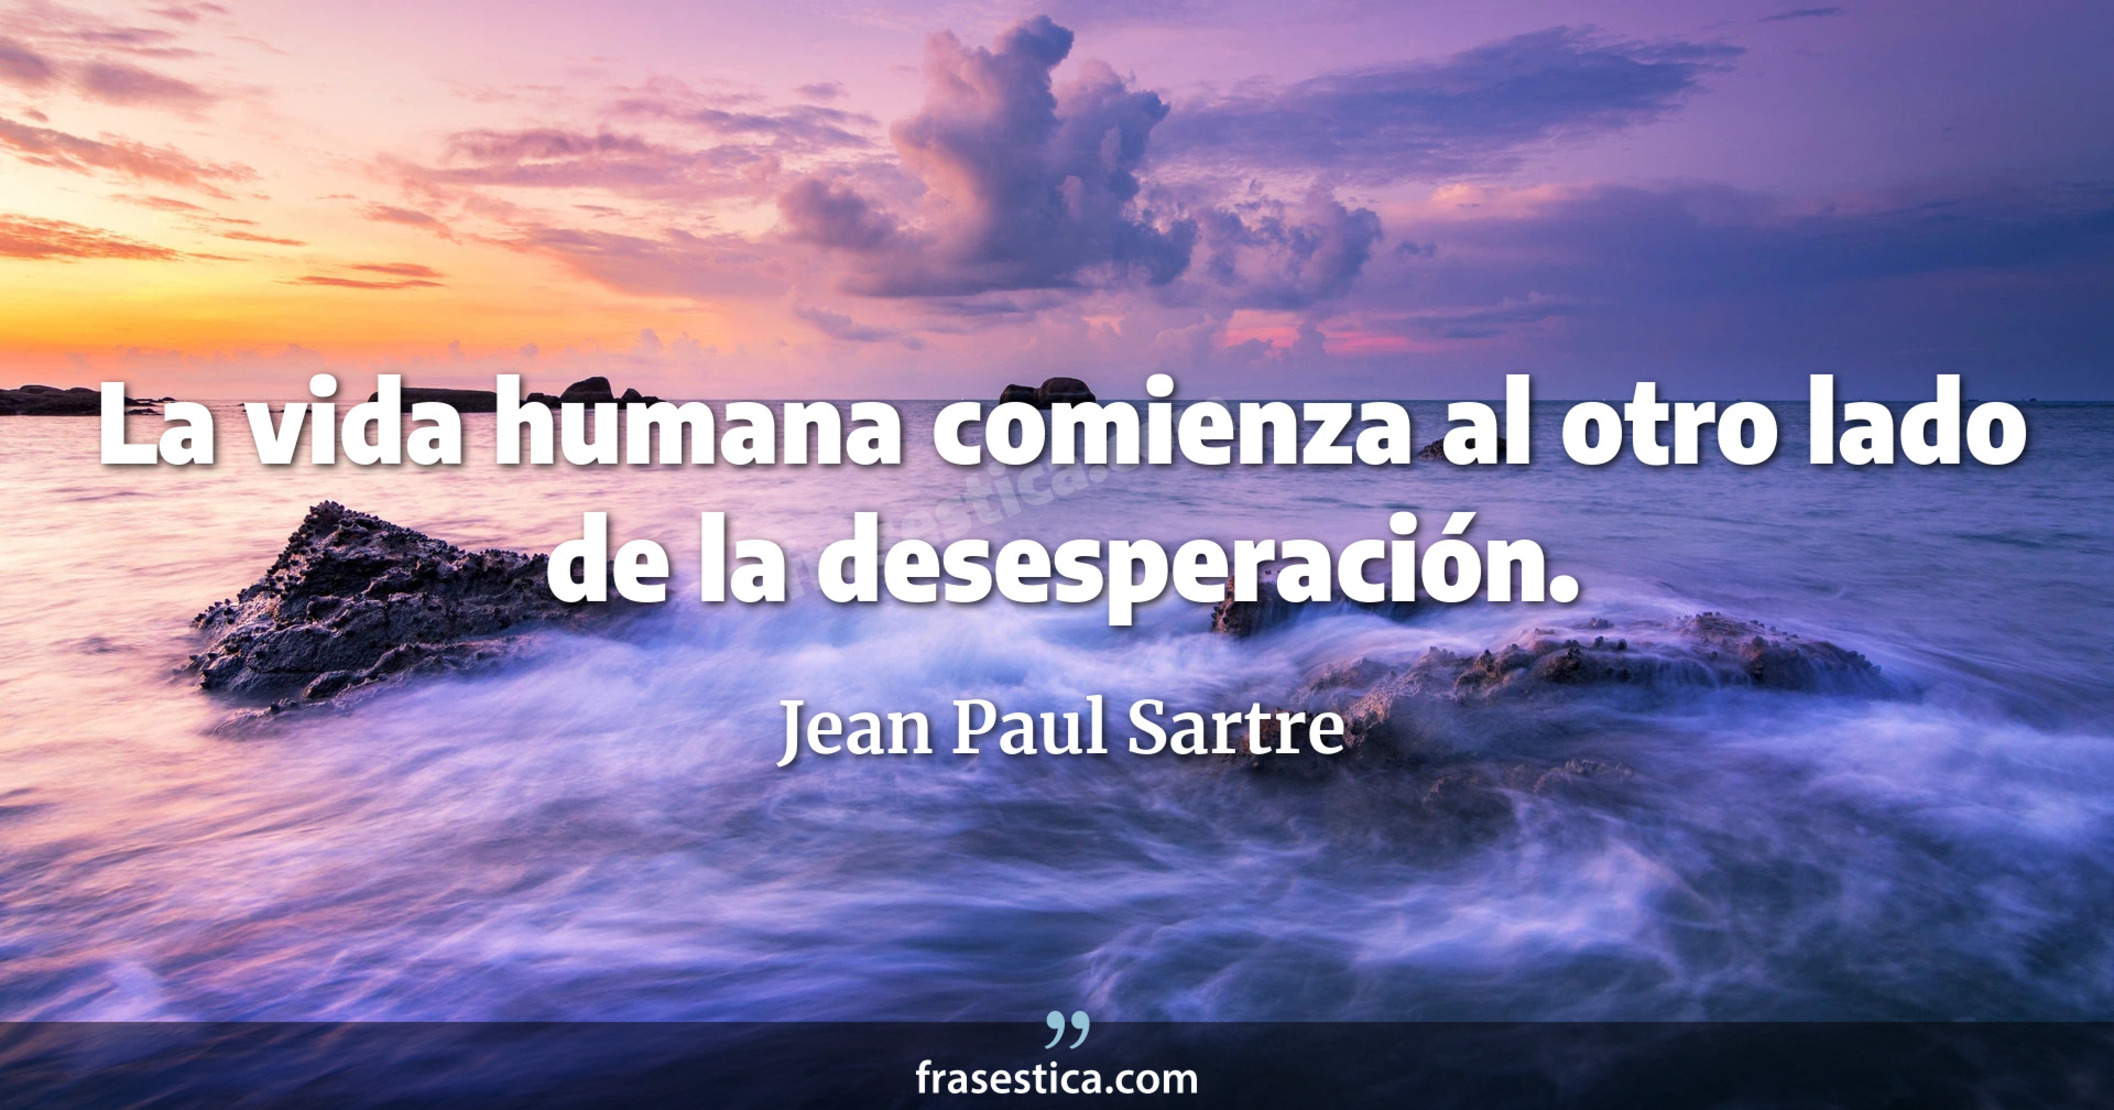 La vida humana comienza al otro lado de la desesperación. - Jean Paul Sartre